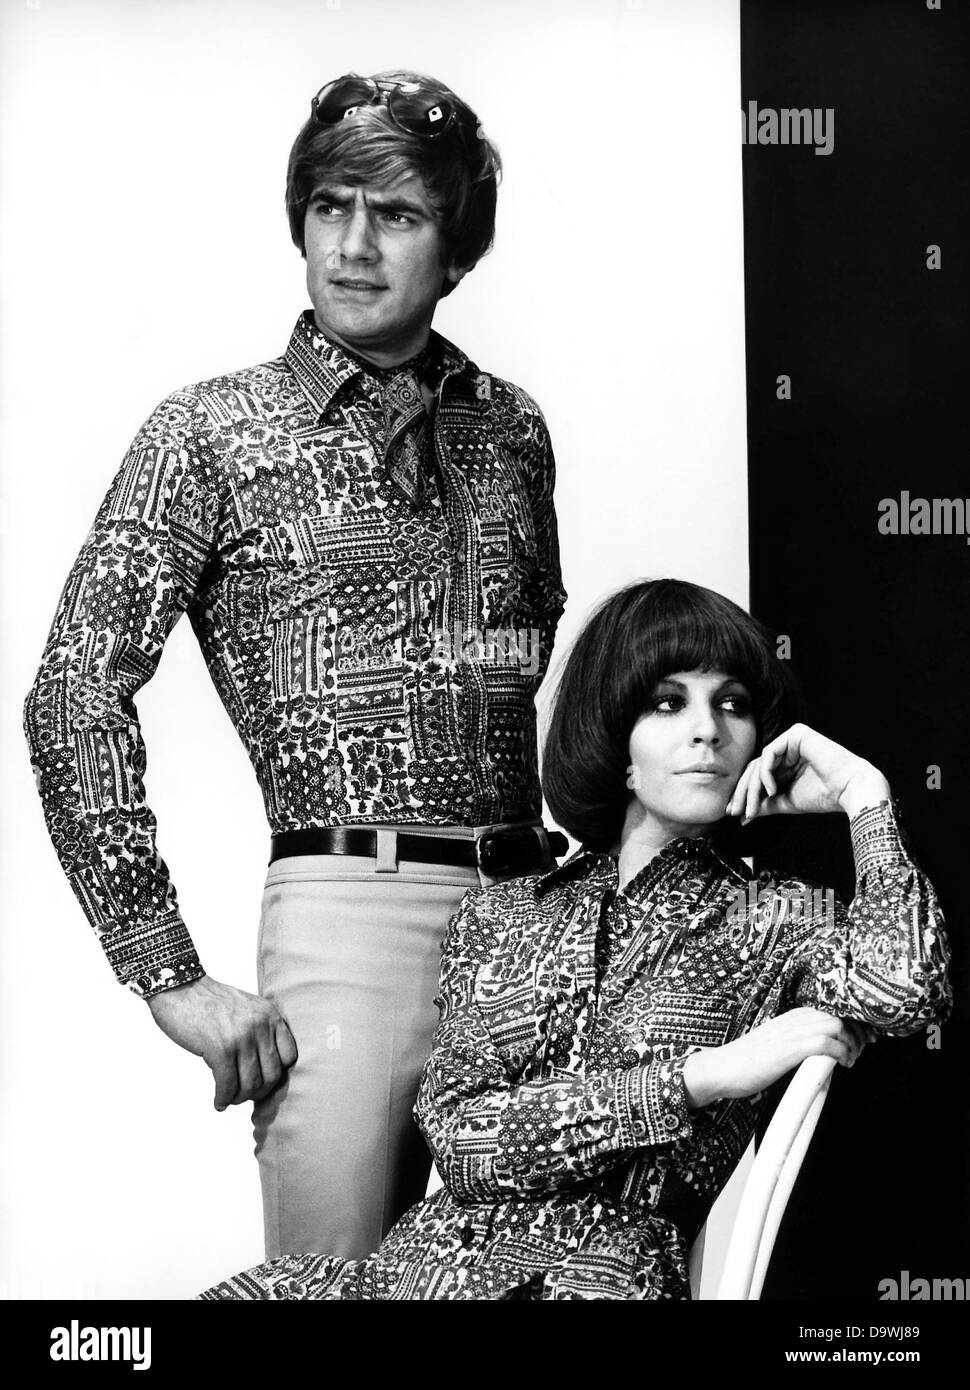 Vêtements correspondant pour 'lui' et 'elle' : Shirt et vêtements sont faits du même matériau. Photo de novembre 1970. Banque D'Images